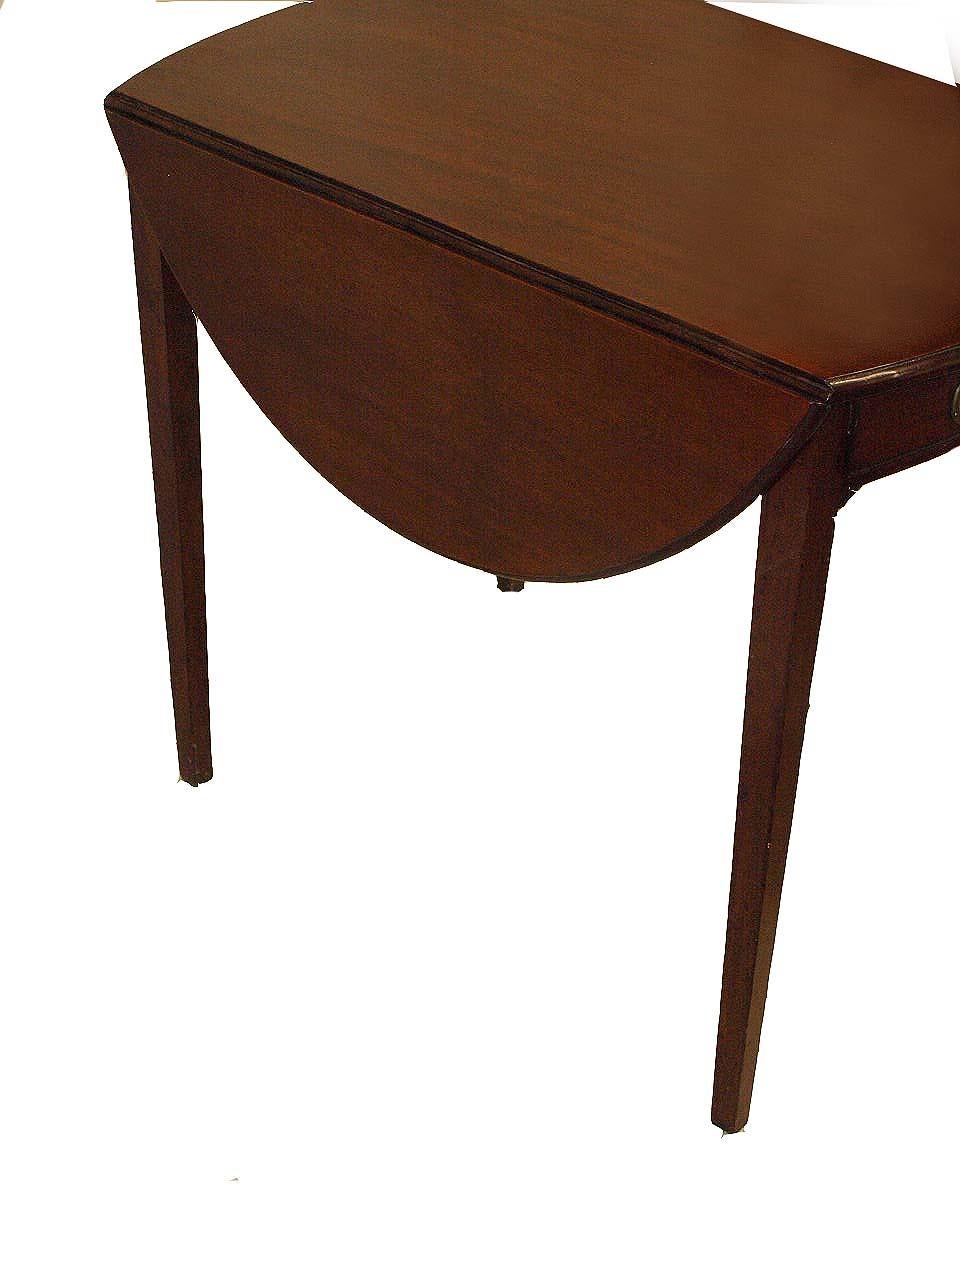 Ovaler Hepplewhite Pembroke-Tisch, dieser Tisch hat eine einzelne Schublade an einem Ende und eine falsche Schublade am anderen, das Sekundärholz der Schubladen ist Eiche, mit den Blättern oben ist er 41,5'' breit. Es gibt zwei sehr kleine Risse an